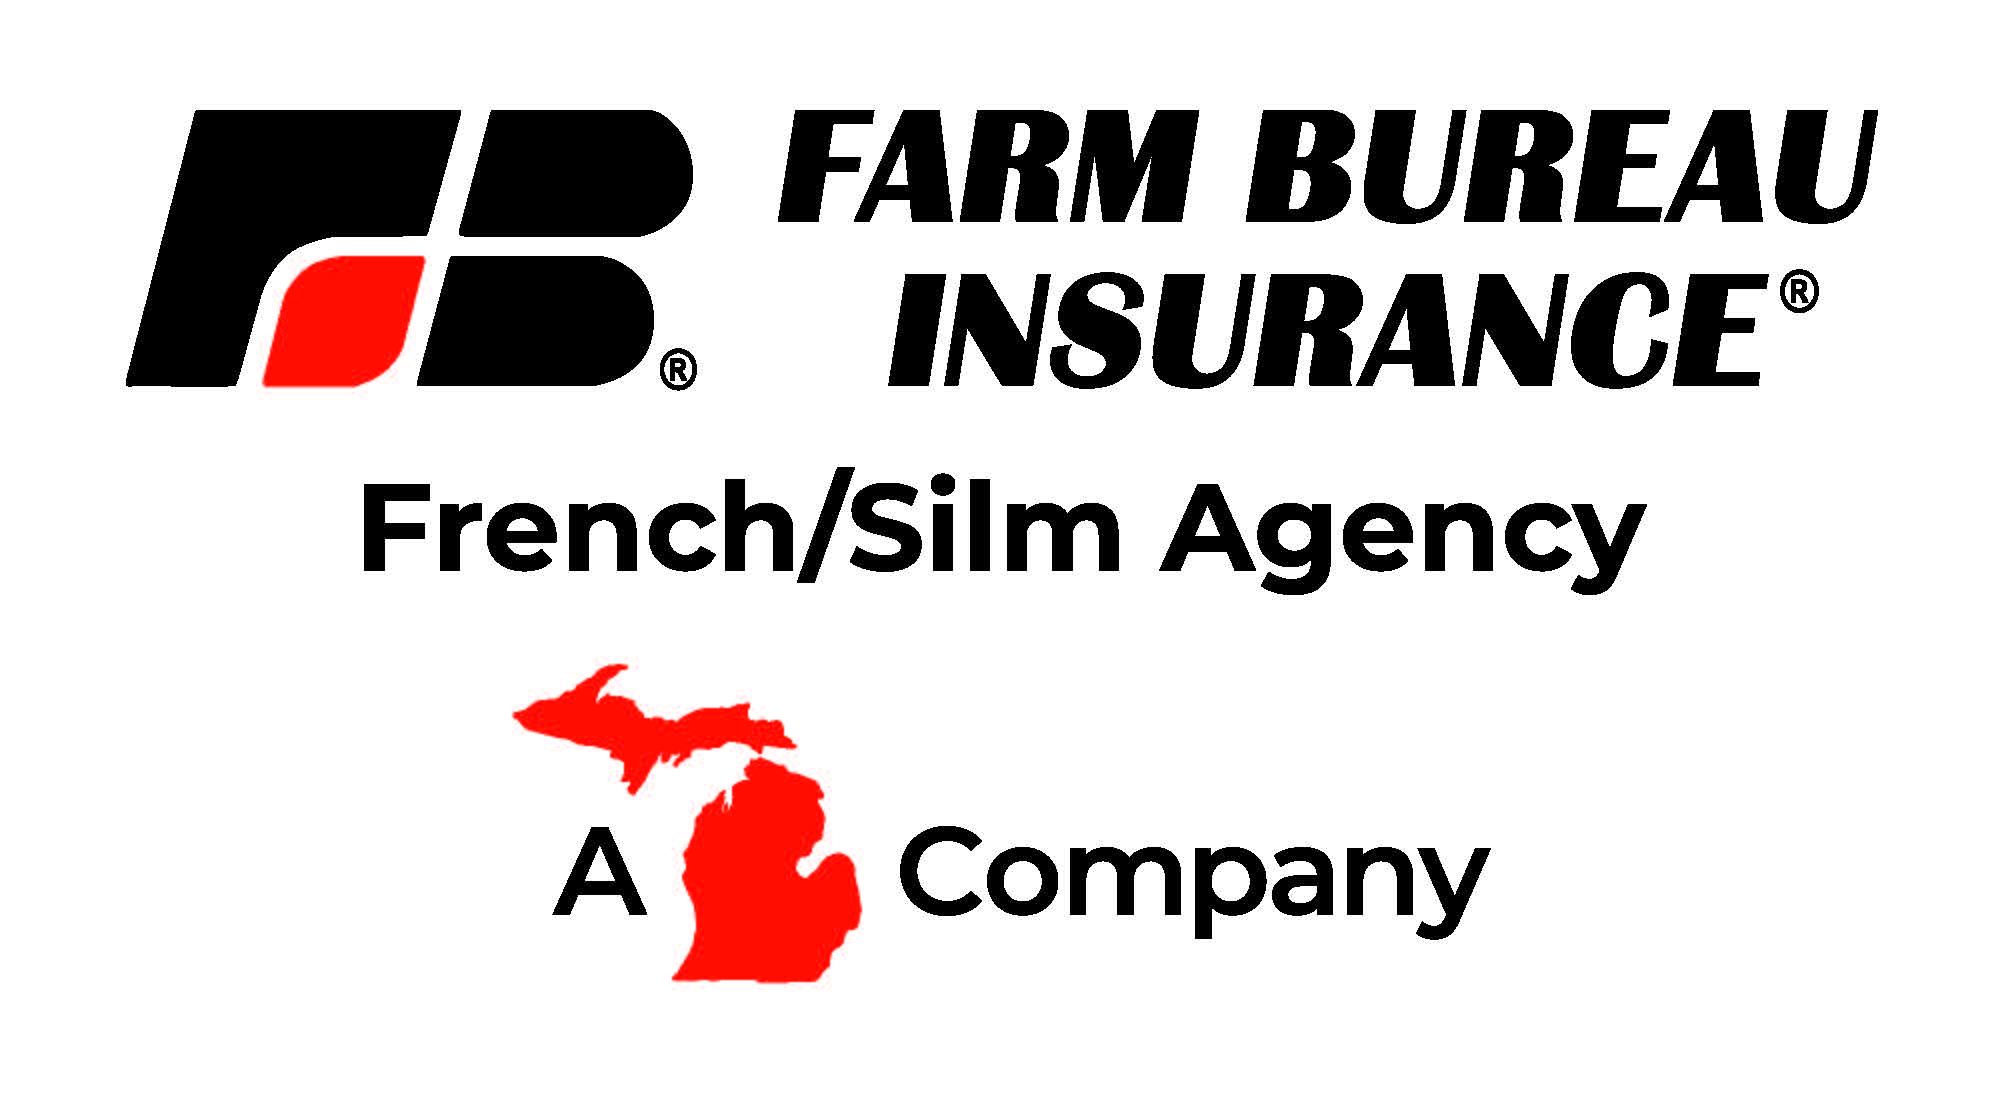 French/Slim Agency - Farm Bureau Insurance